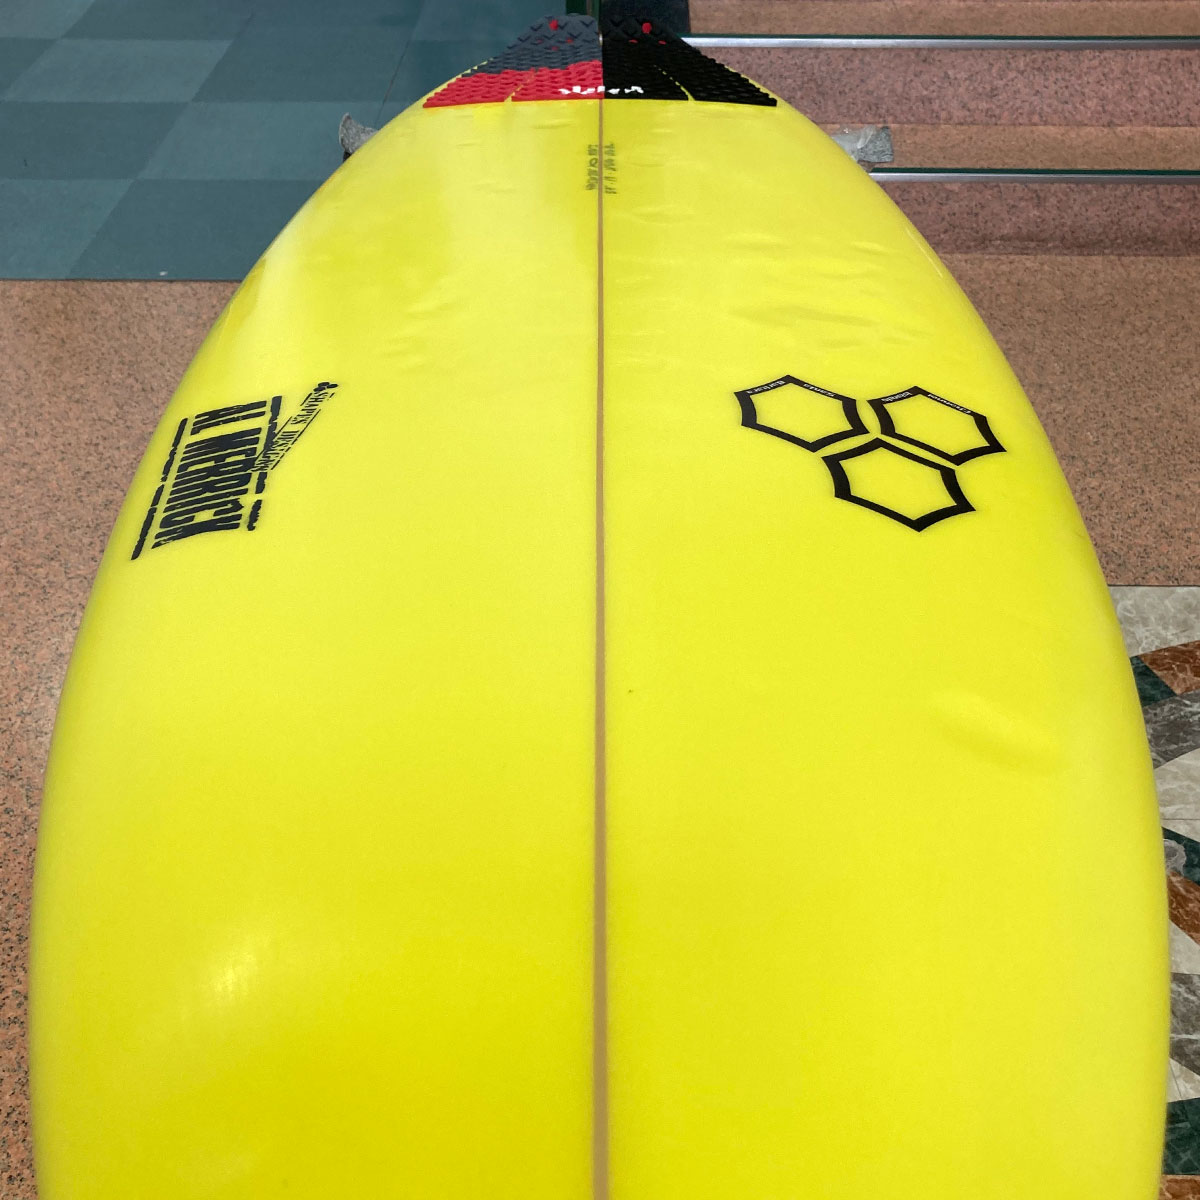 中古ボード サーフボード サーフィン USED SURFBOARD 【used255】CHANNEL ISLANDS Surfboards MWJ  チャンネルアイランズ サーフボード エムダブルジェー 5’7 x 19 x 2 5/16 26.8L-ジャックオーシャンスポーツ